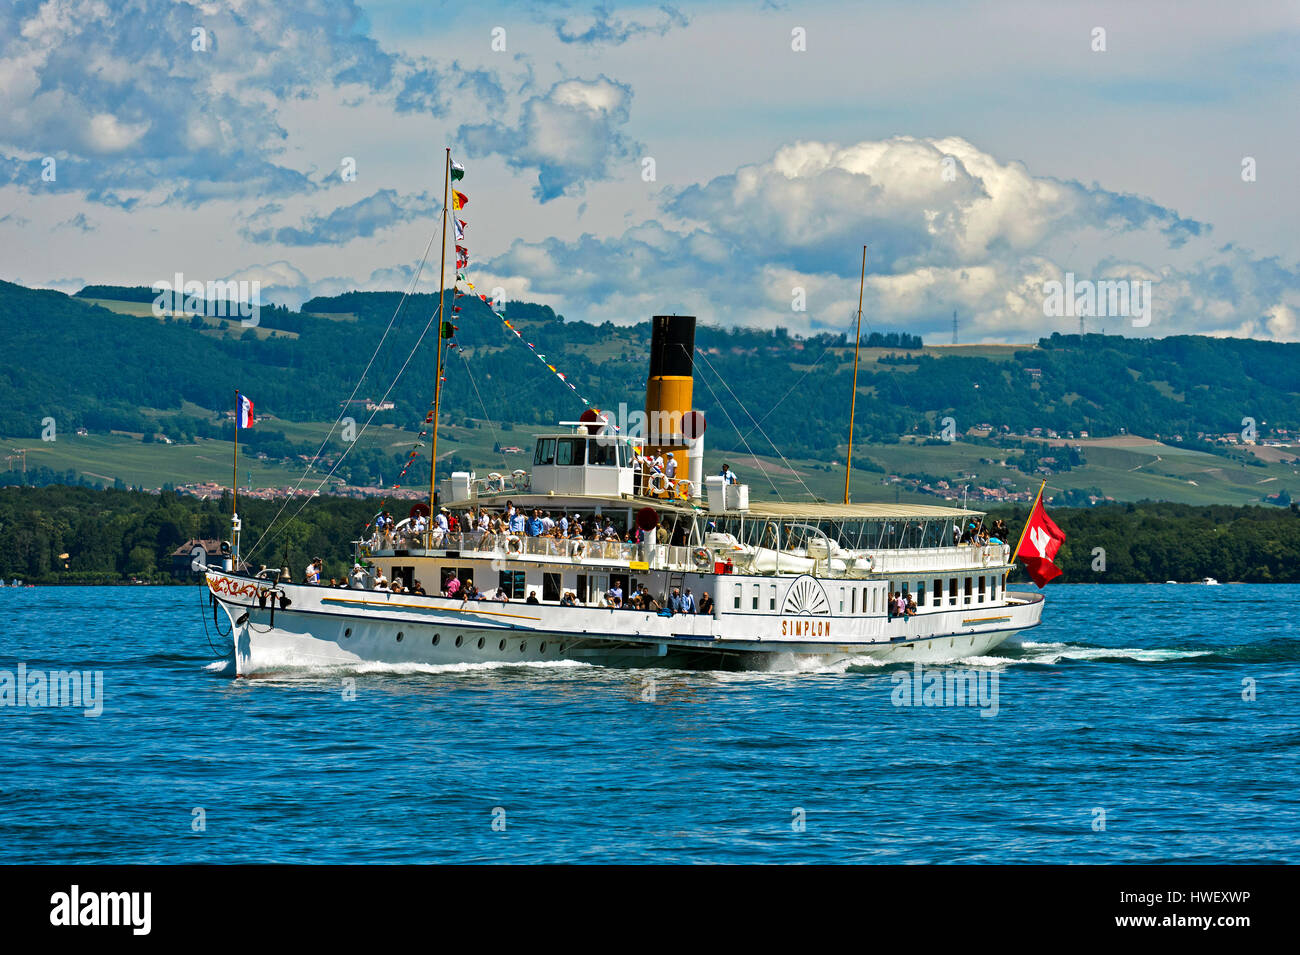 Schaufelrad-Dampfer Simplon am Genfer See, Genf, Schweiz Stockfotografie -  Alamy